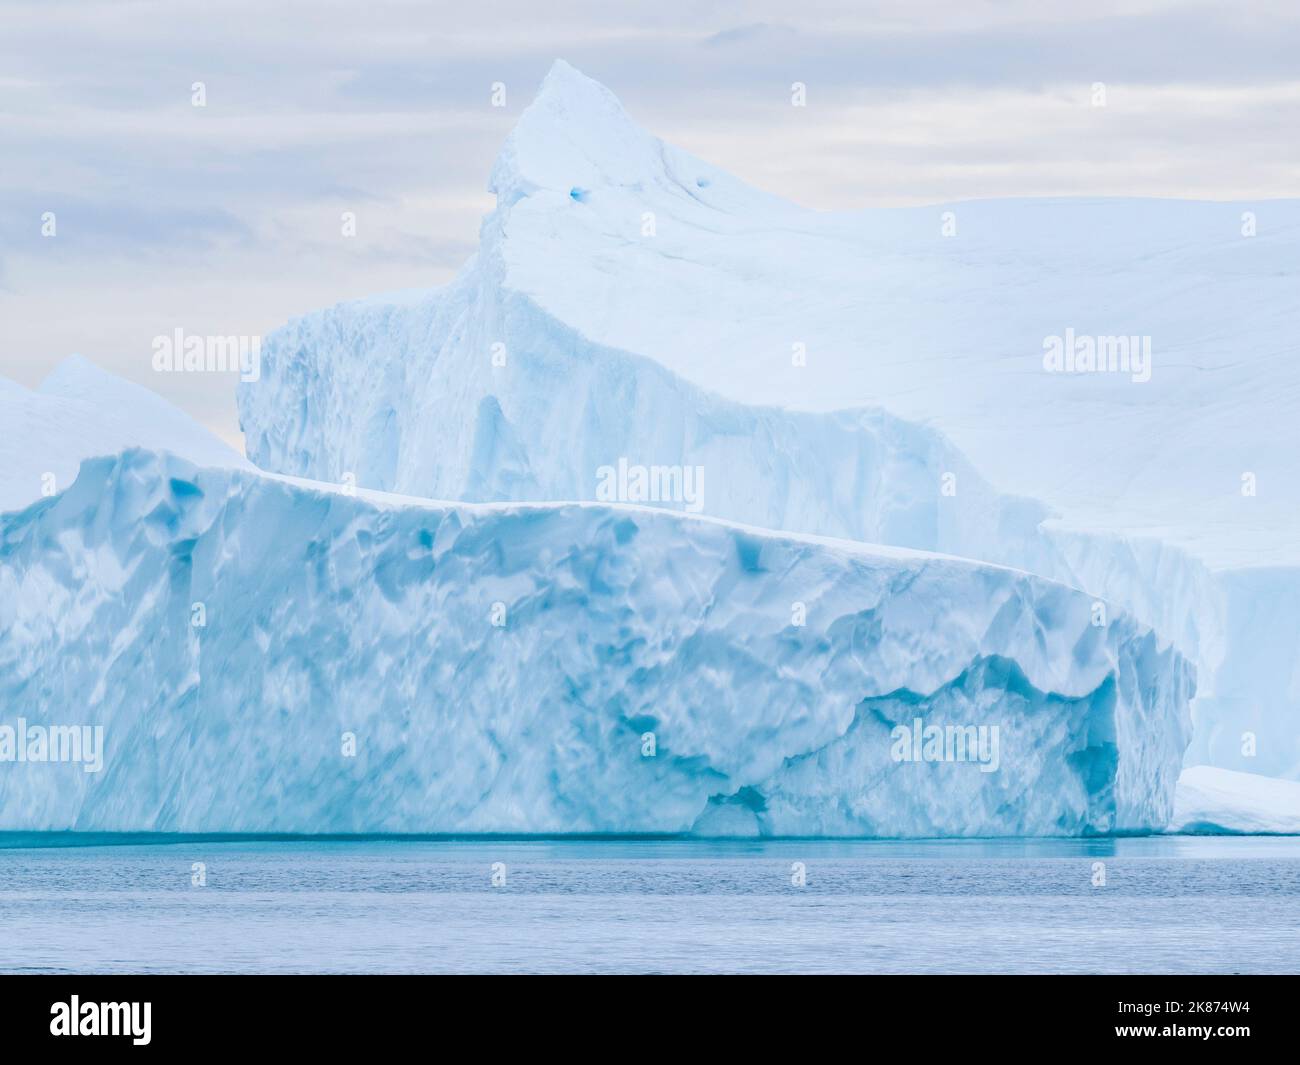 D'énormes icebergs du Ilulissat Icefjord sont bloqués sur une ancienne moraine terminale juste à l'extérieur d'Ilulissat, Groenland, Danemark, régions polaires Banque D'Images